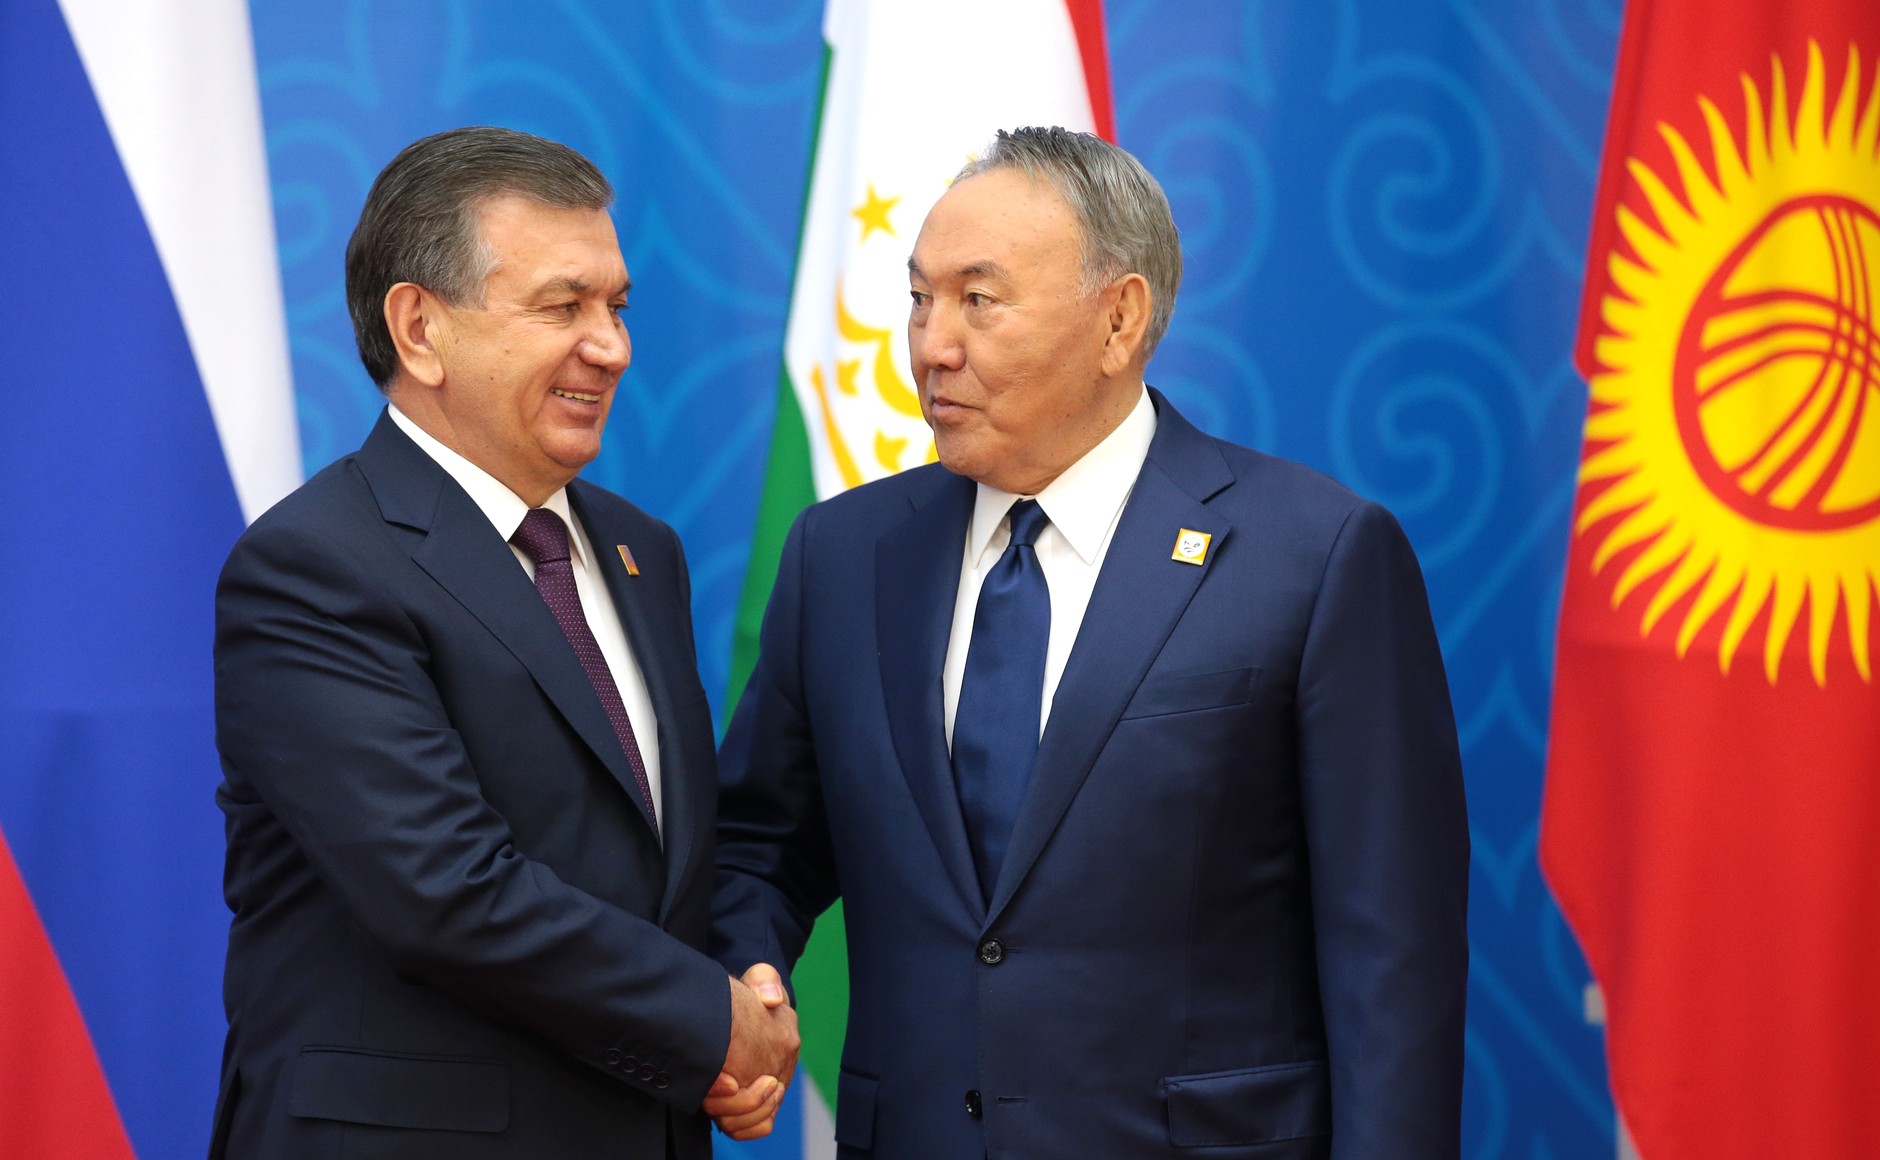 Shavkat Mirziyoyev shakes hands with Nursultan Nazarbayev, 2017.